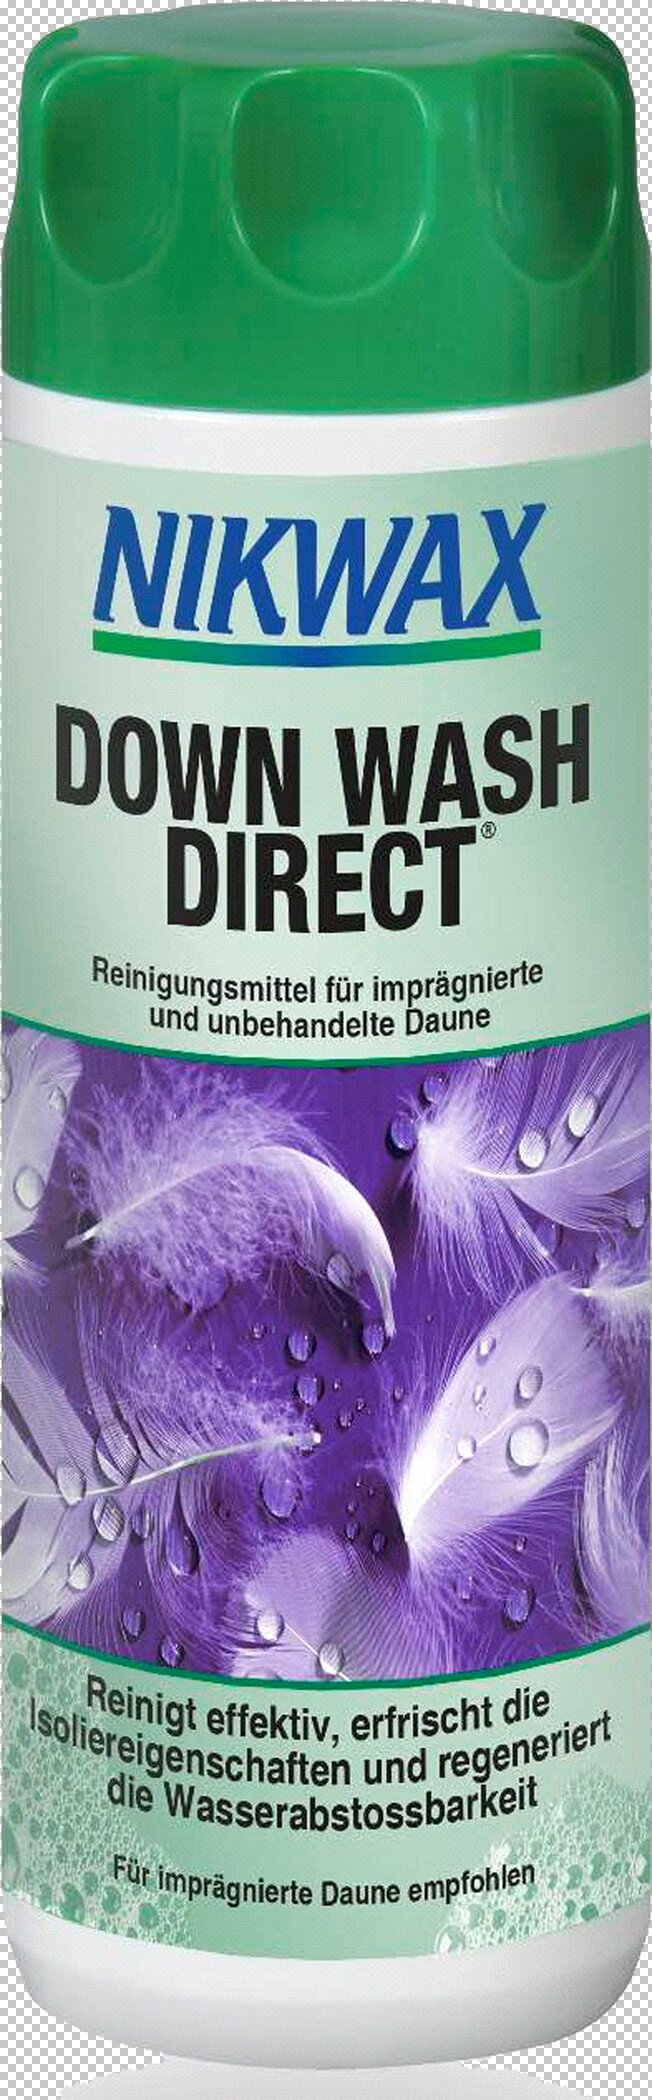 Pflege Down Wash Direct